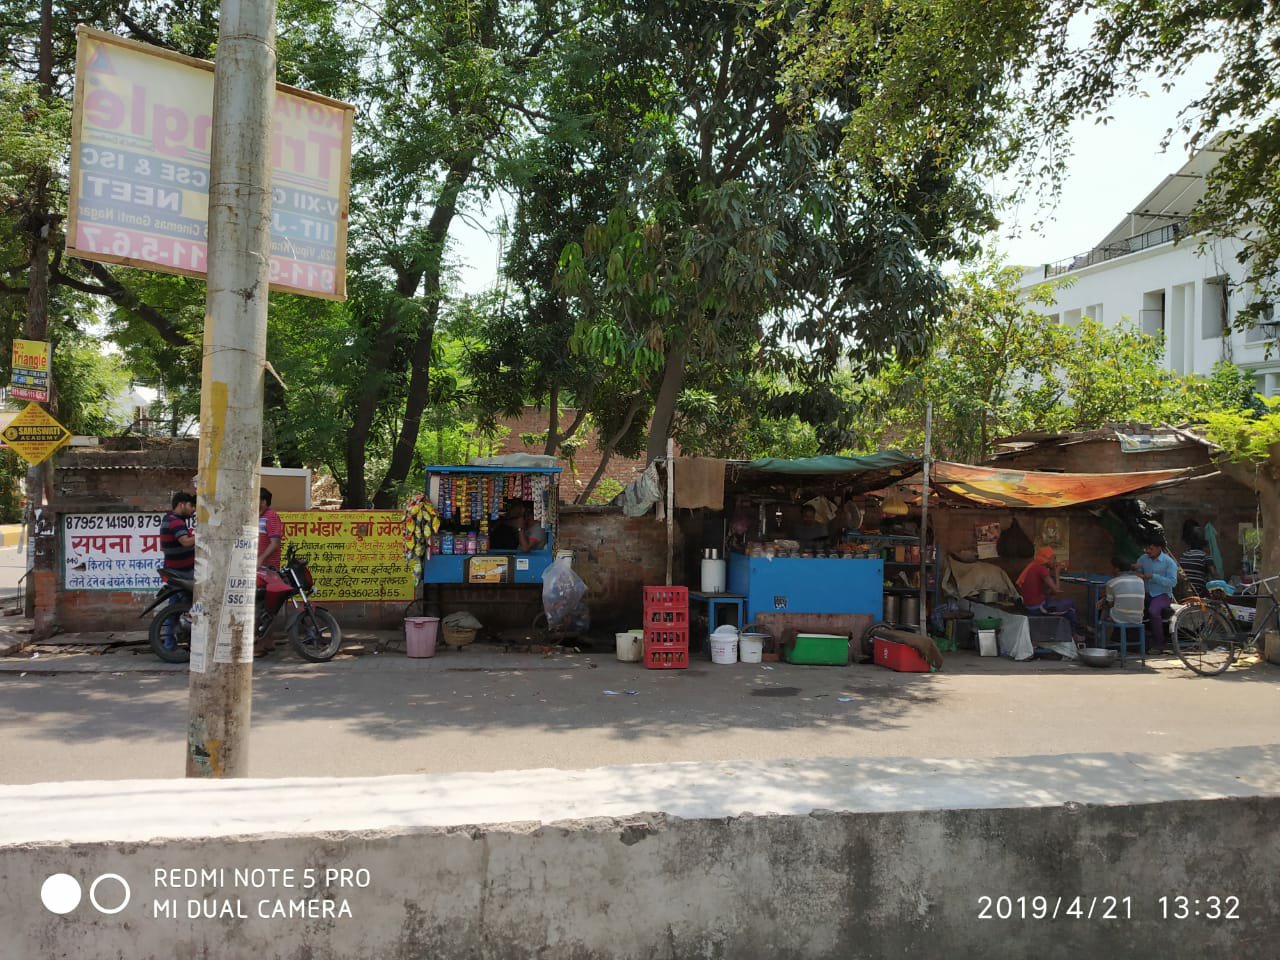 लखनऊ के गोमतीनगर पुलिस थाने के दारोगा की दबंगई, फुटपाथ पर लगी दुकानों से हफ्ता न मिलने पर फेंका गरीबों का सामान | New India Times